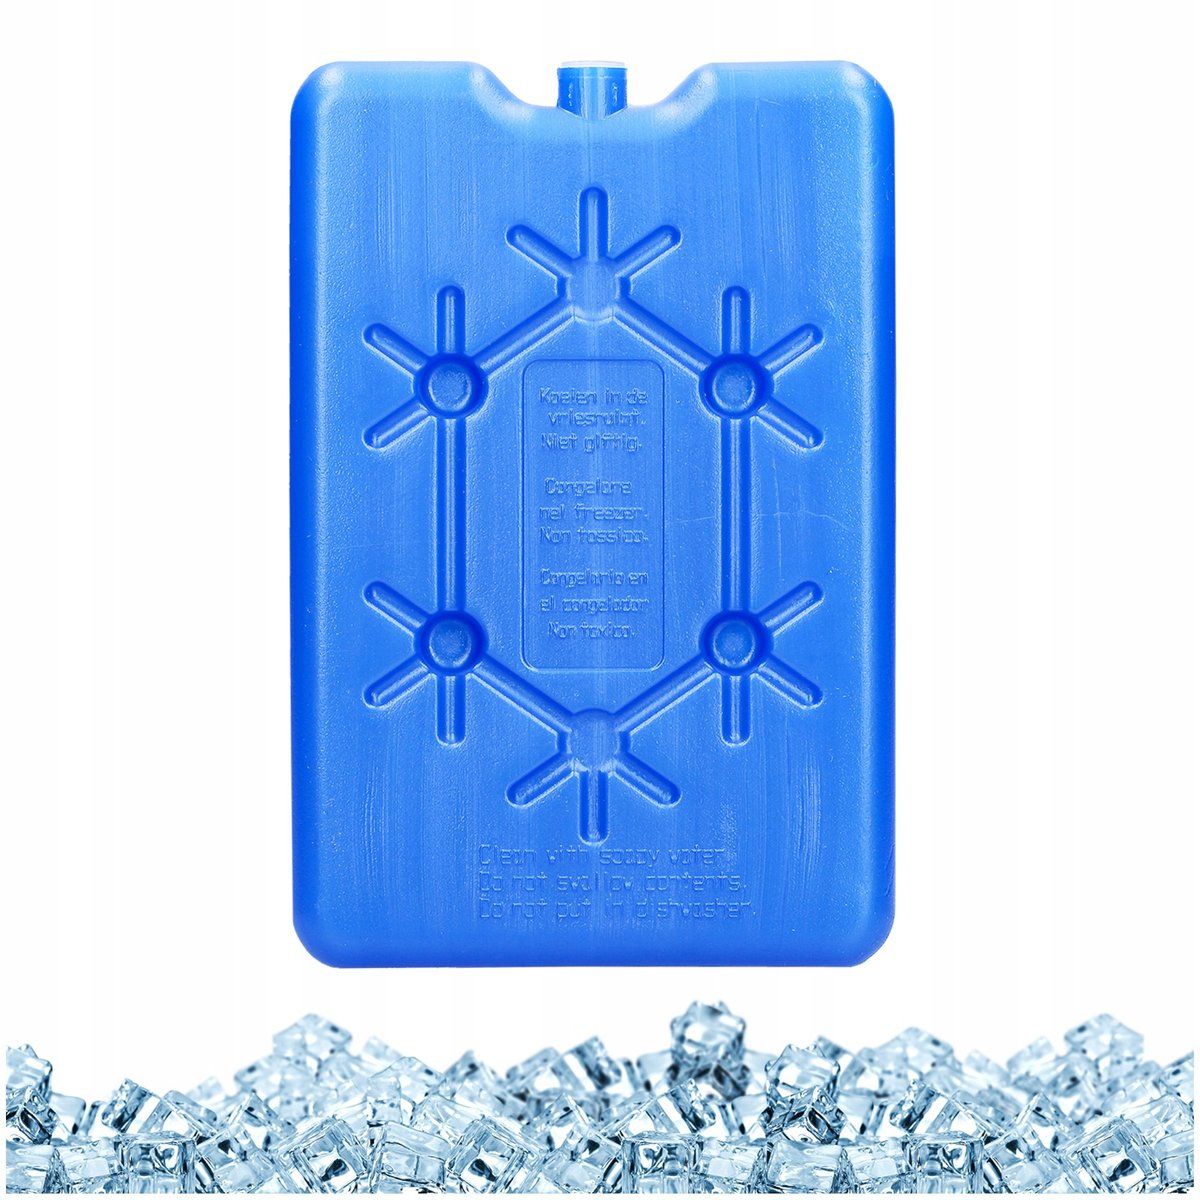 Wkład chłodzący do lodówki turystycznej torby termicznej termoizolacyjnej 200g kod: O-489094 